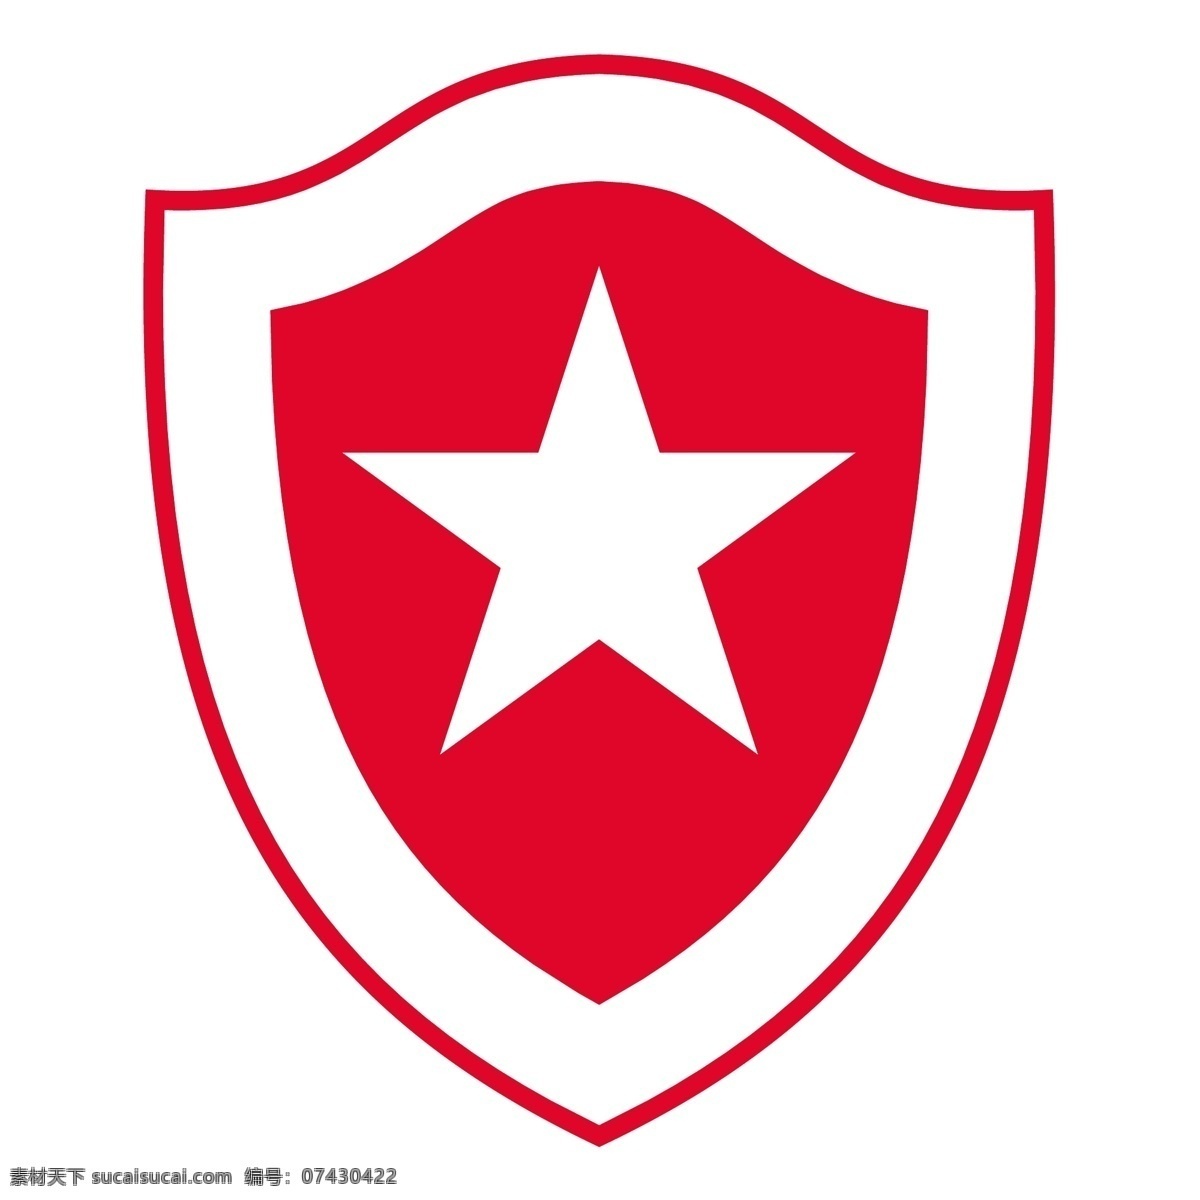 奥林匹亚 足球 俱乐部 奥利维亚 莱塔 免费 卡莱 塔 标志 免费资料 psd源文件 logo设计